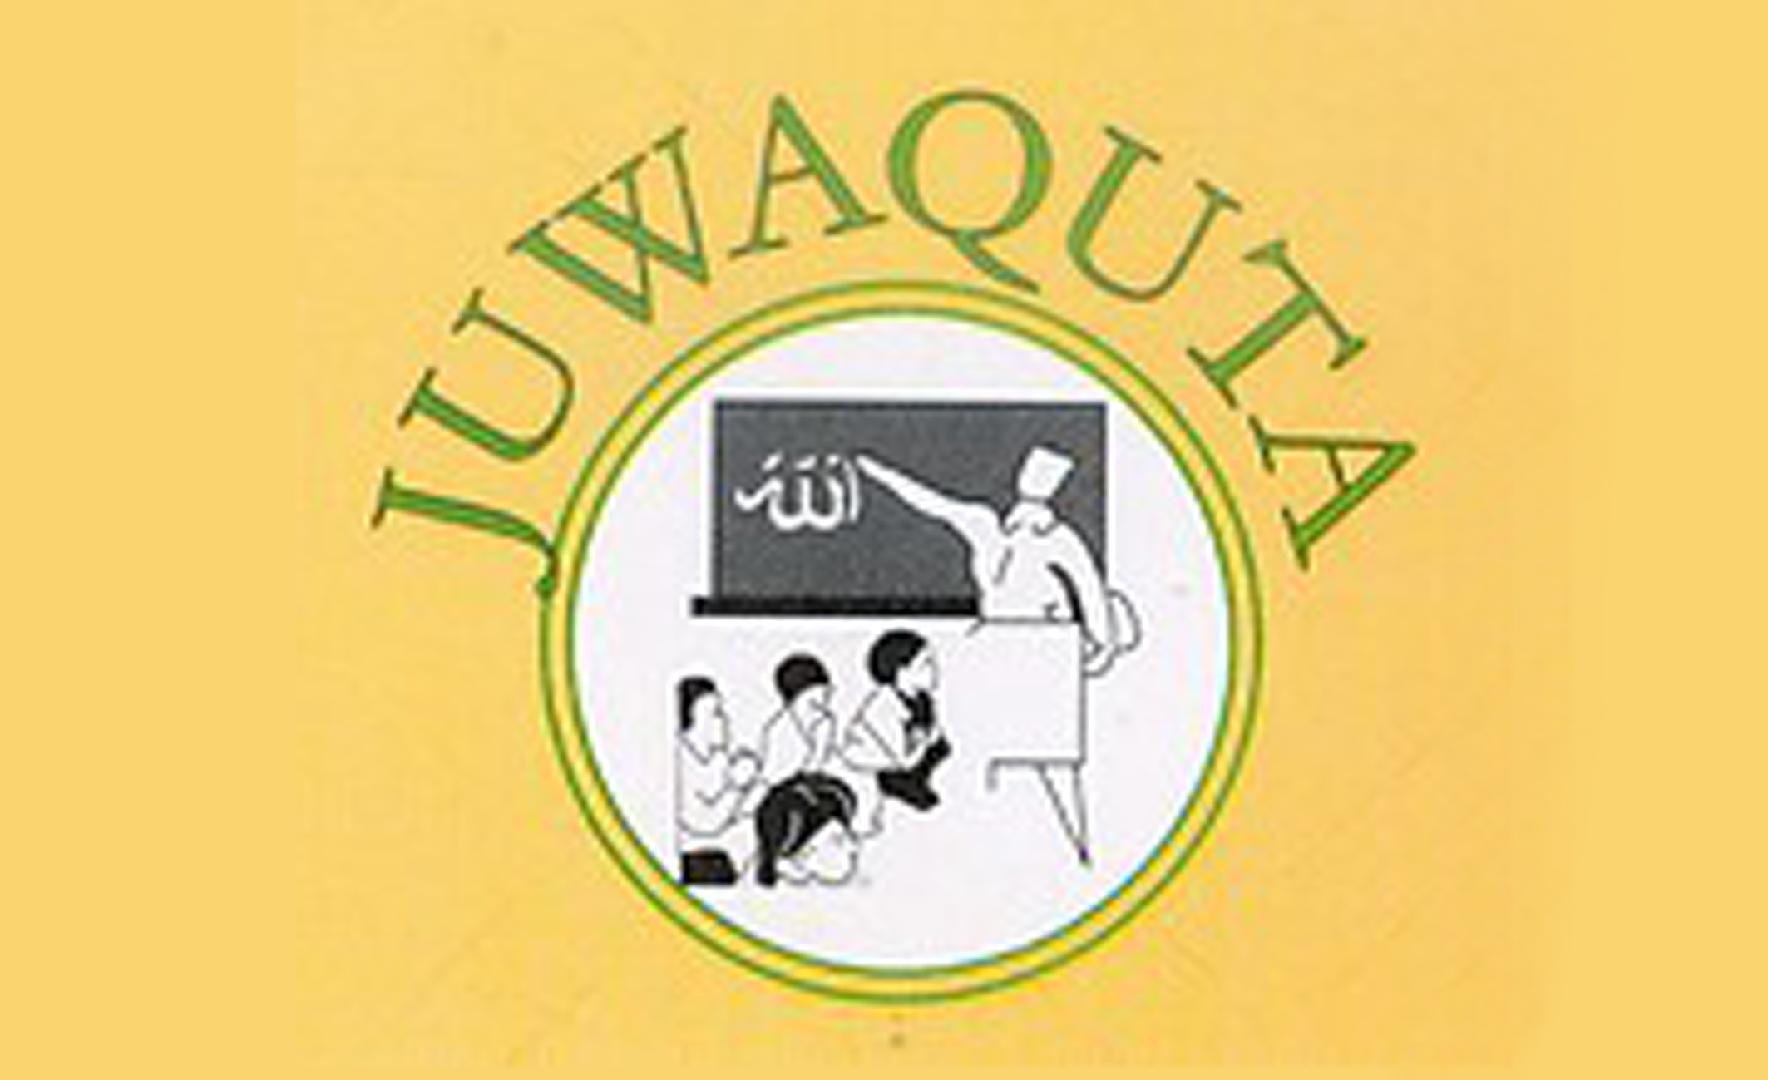 Association of Quran Teachers in Tanzania (JUWAQUTA)